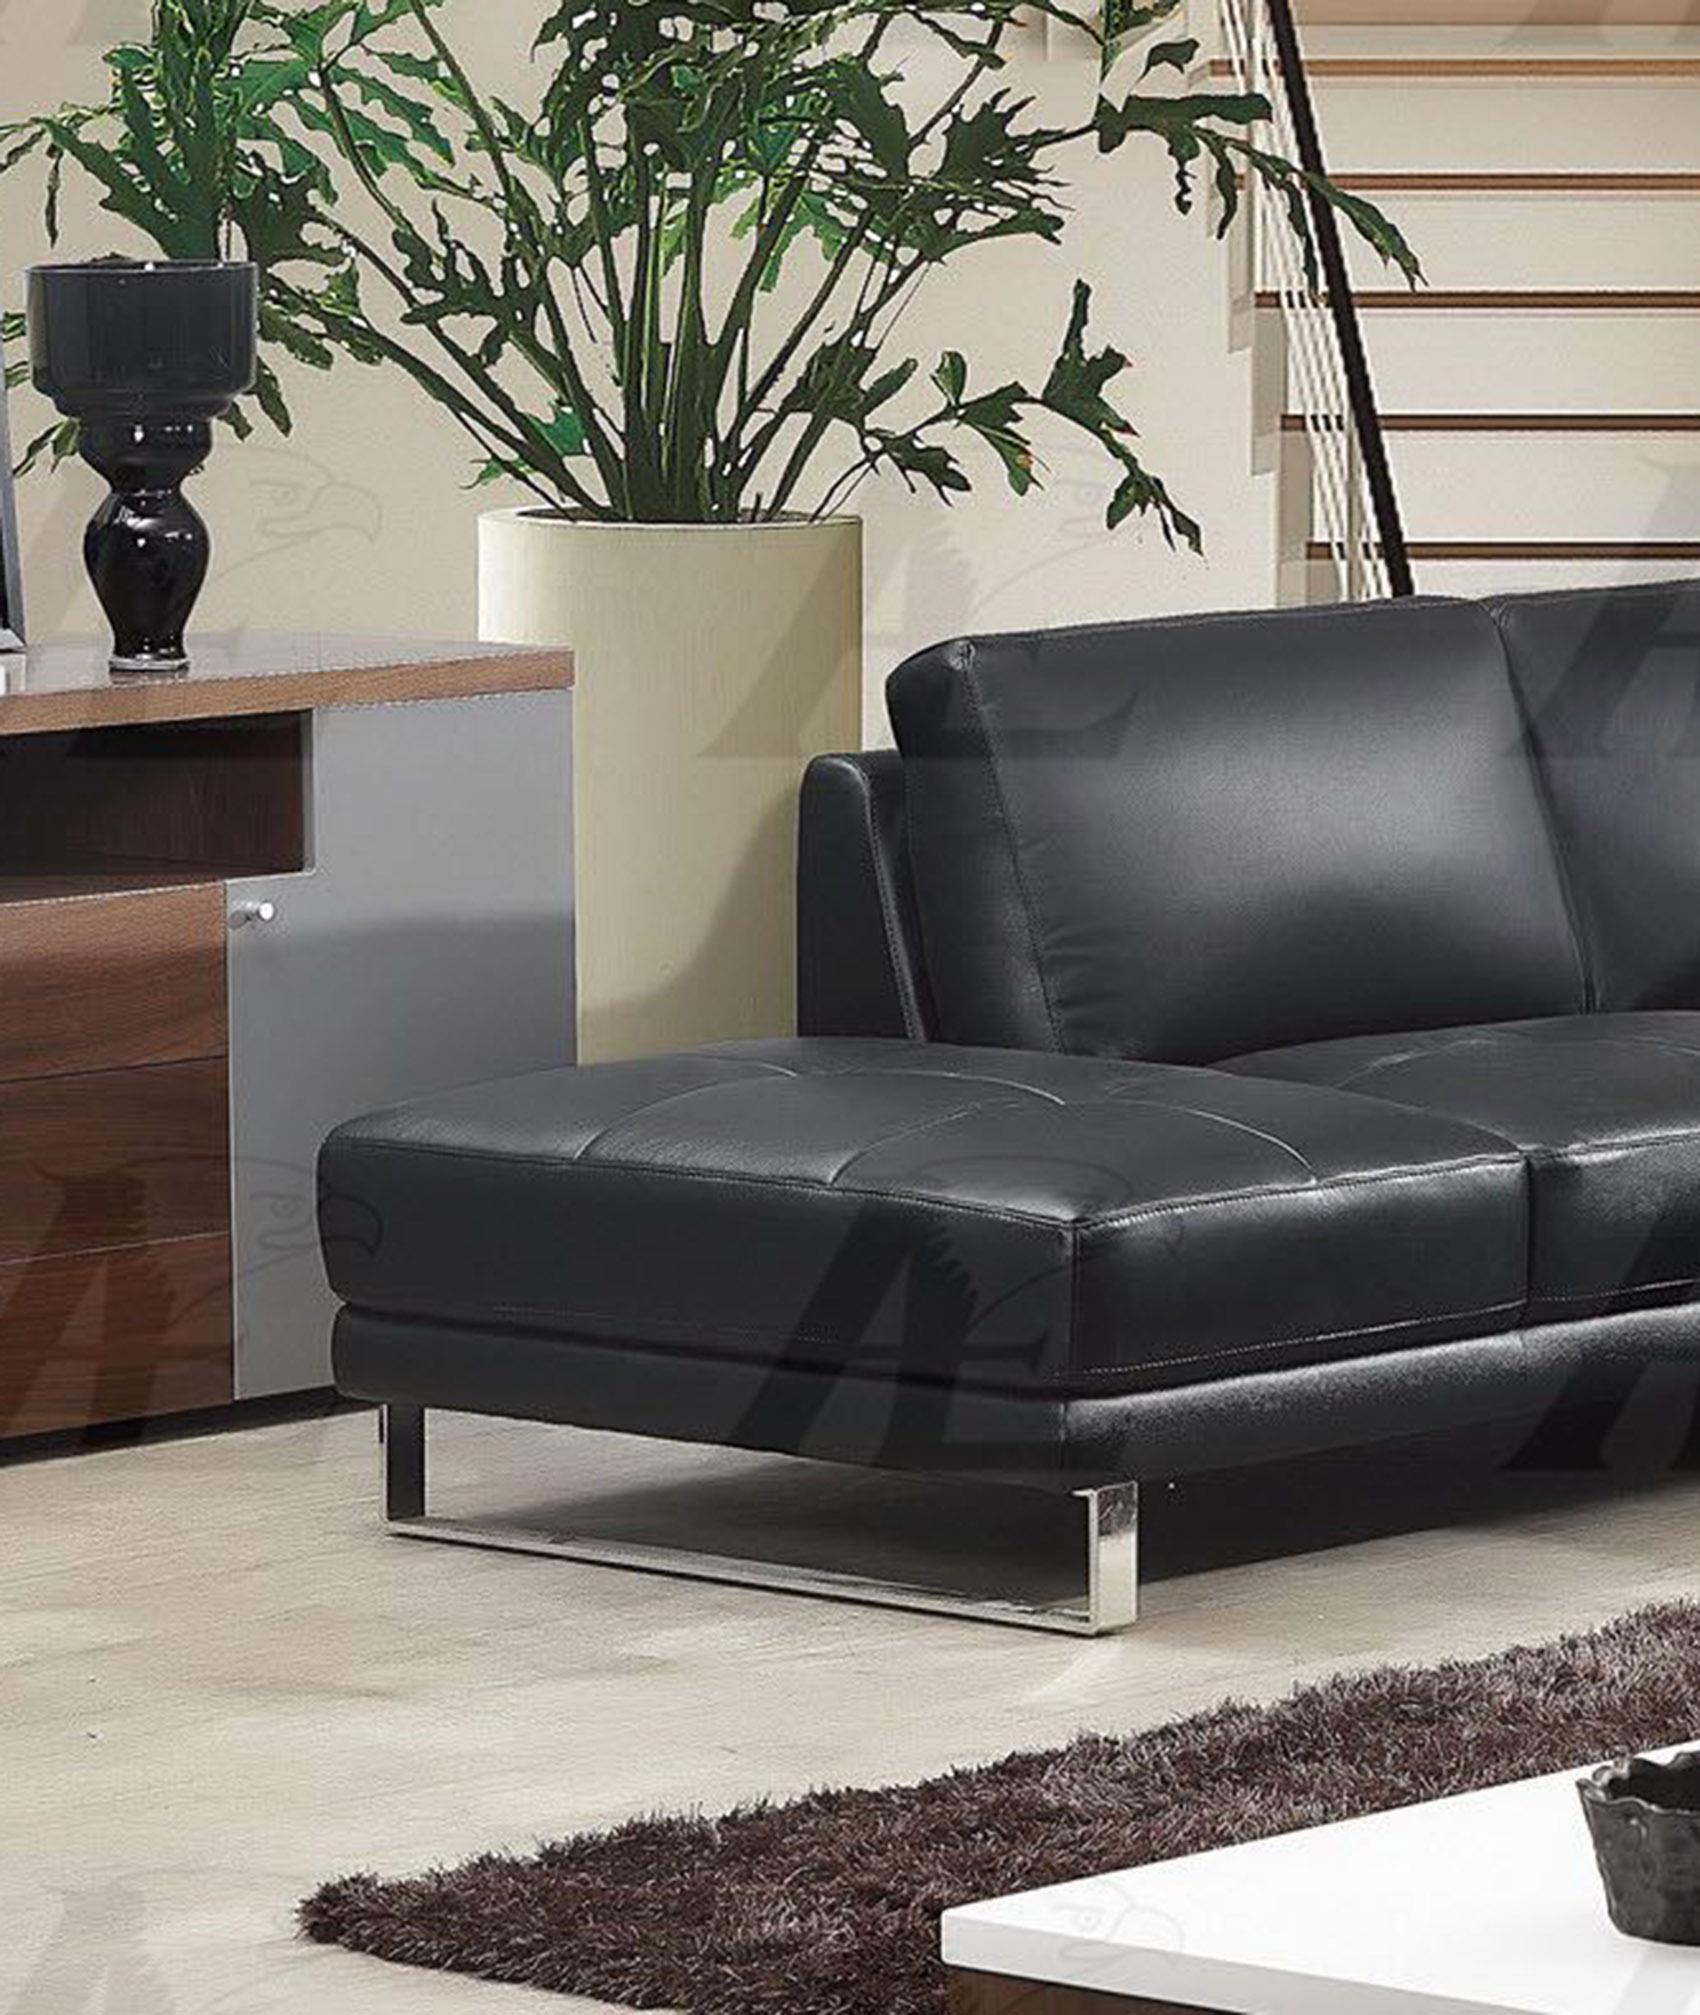 

        
American Eagle Furniture EK-L025-BK Sectional Sofa Black Italian Leather 00656237666788
